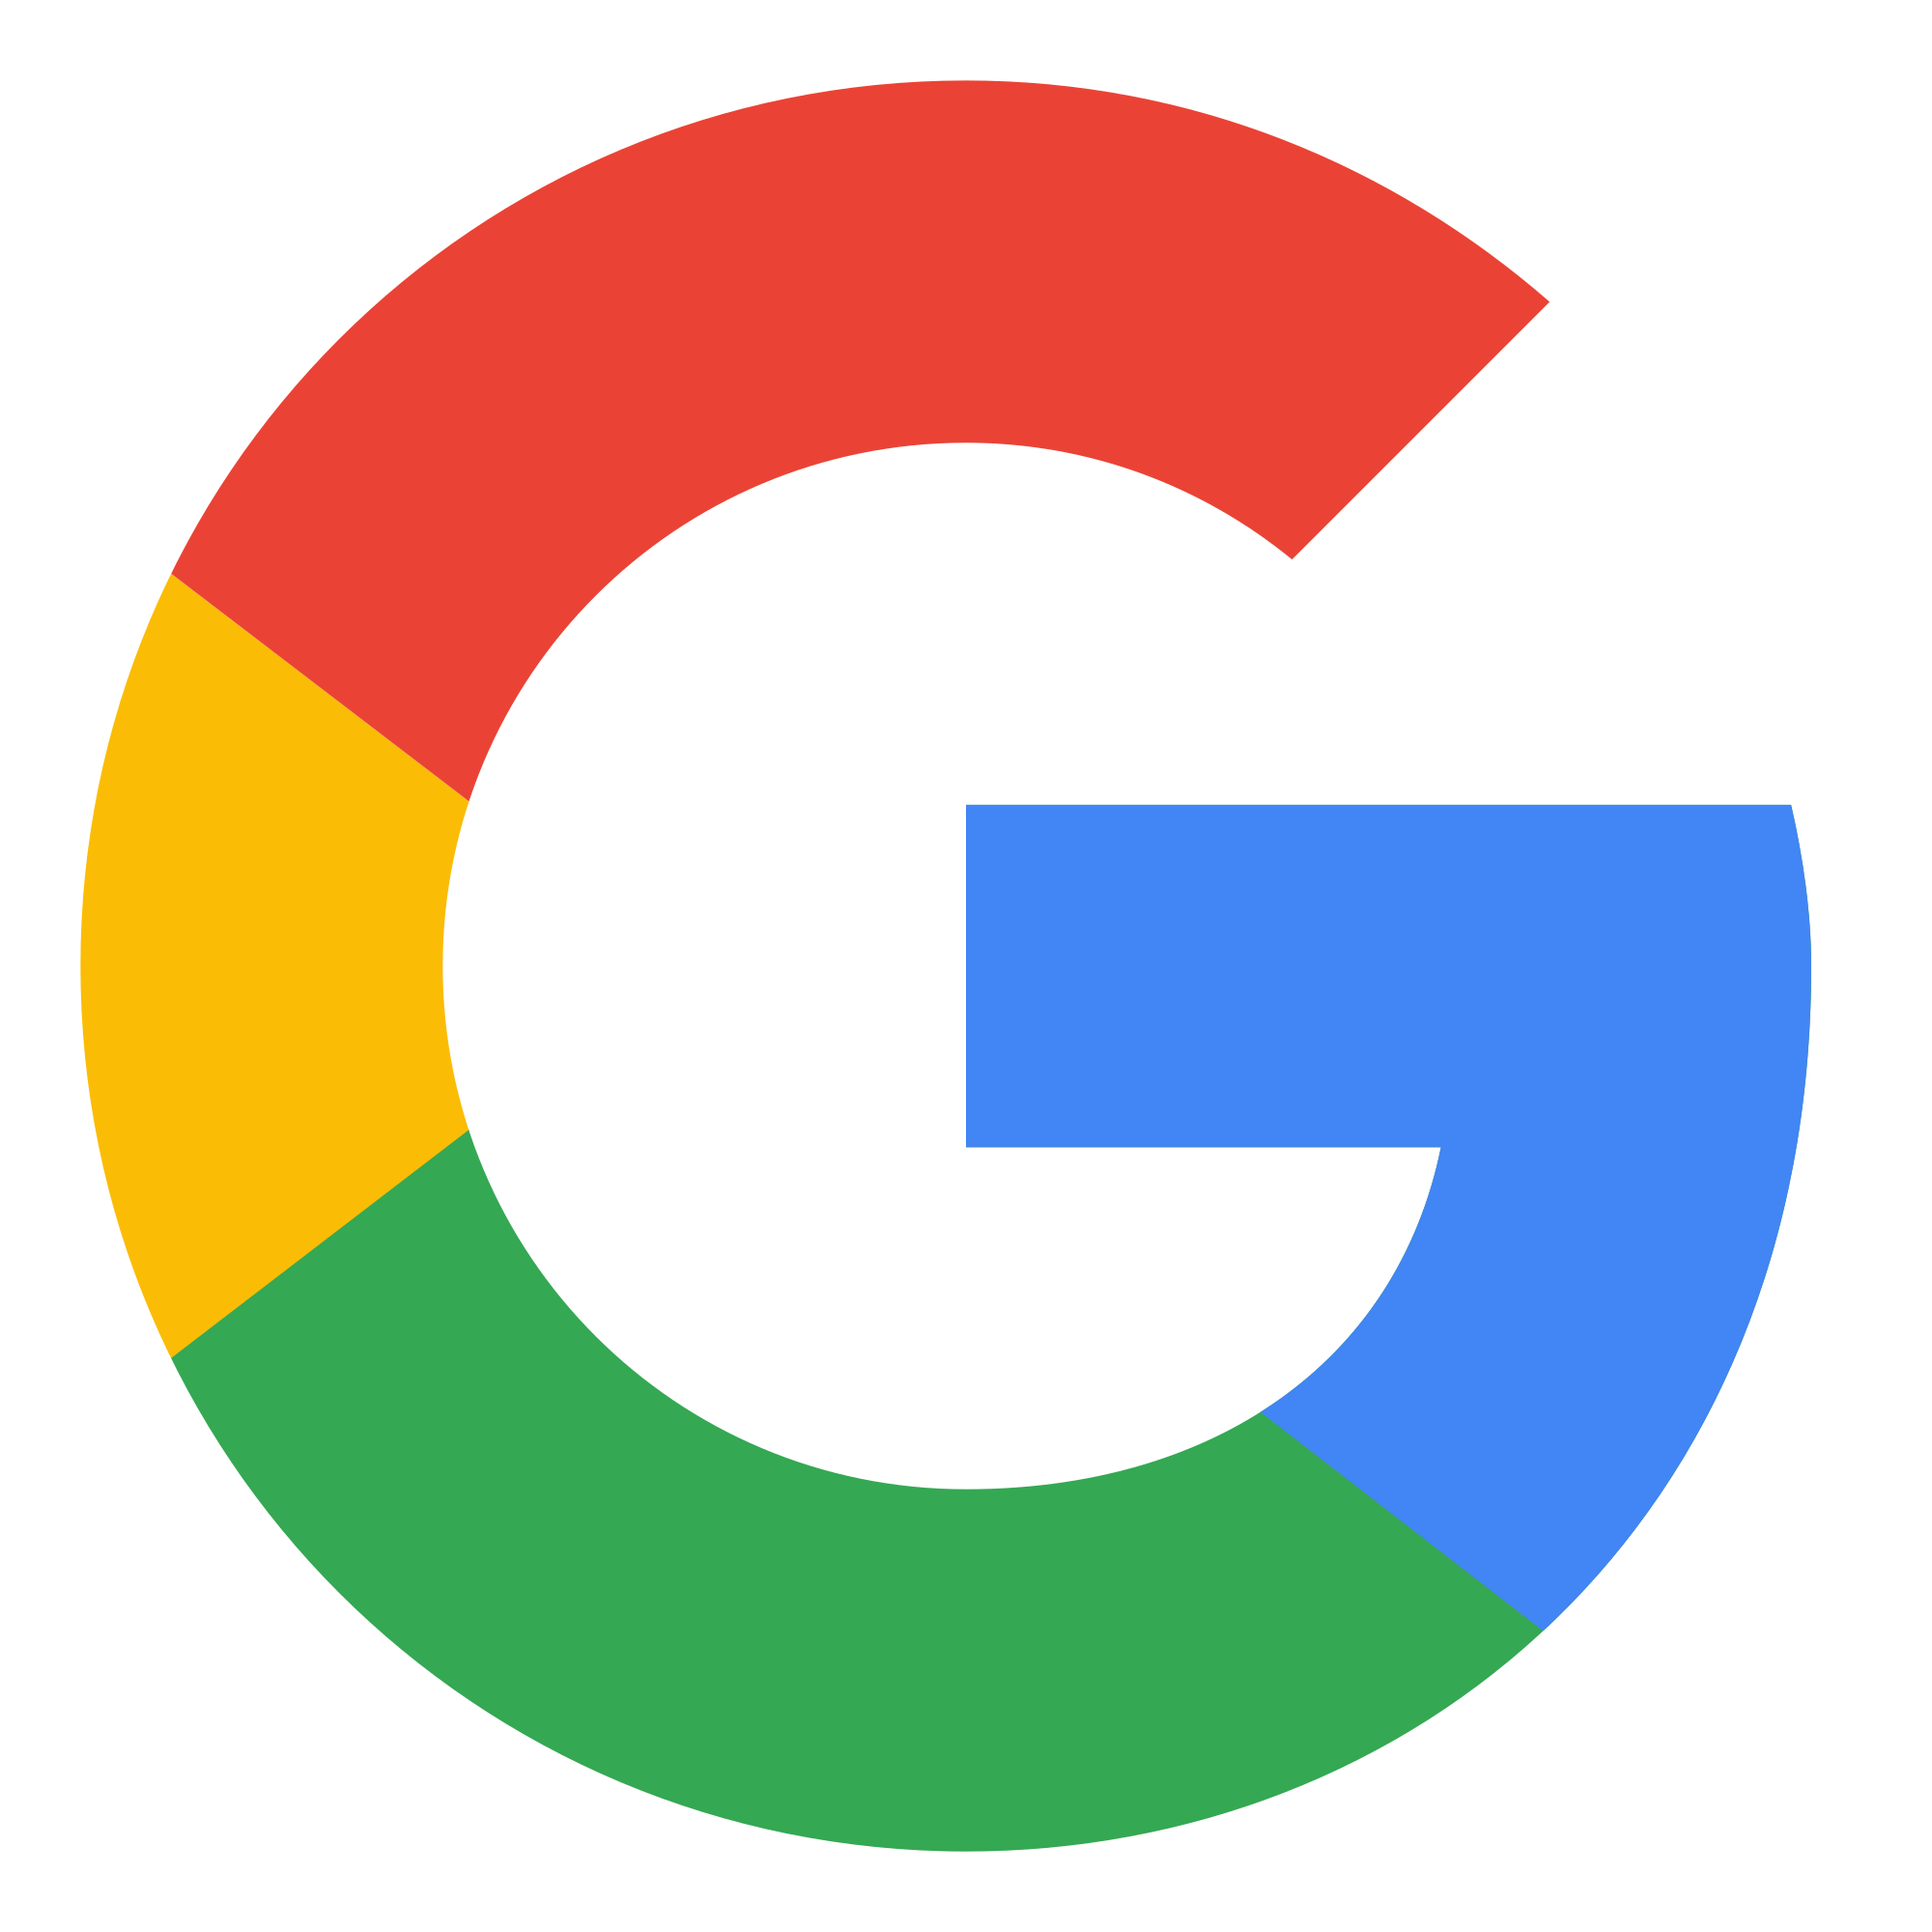 الگوریتم جدید گوگل 2019